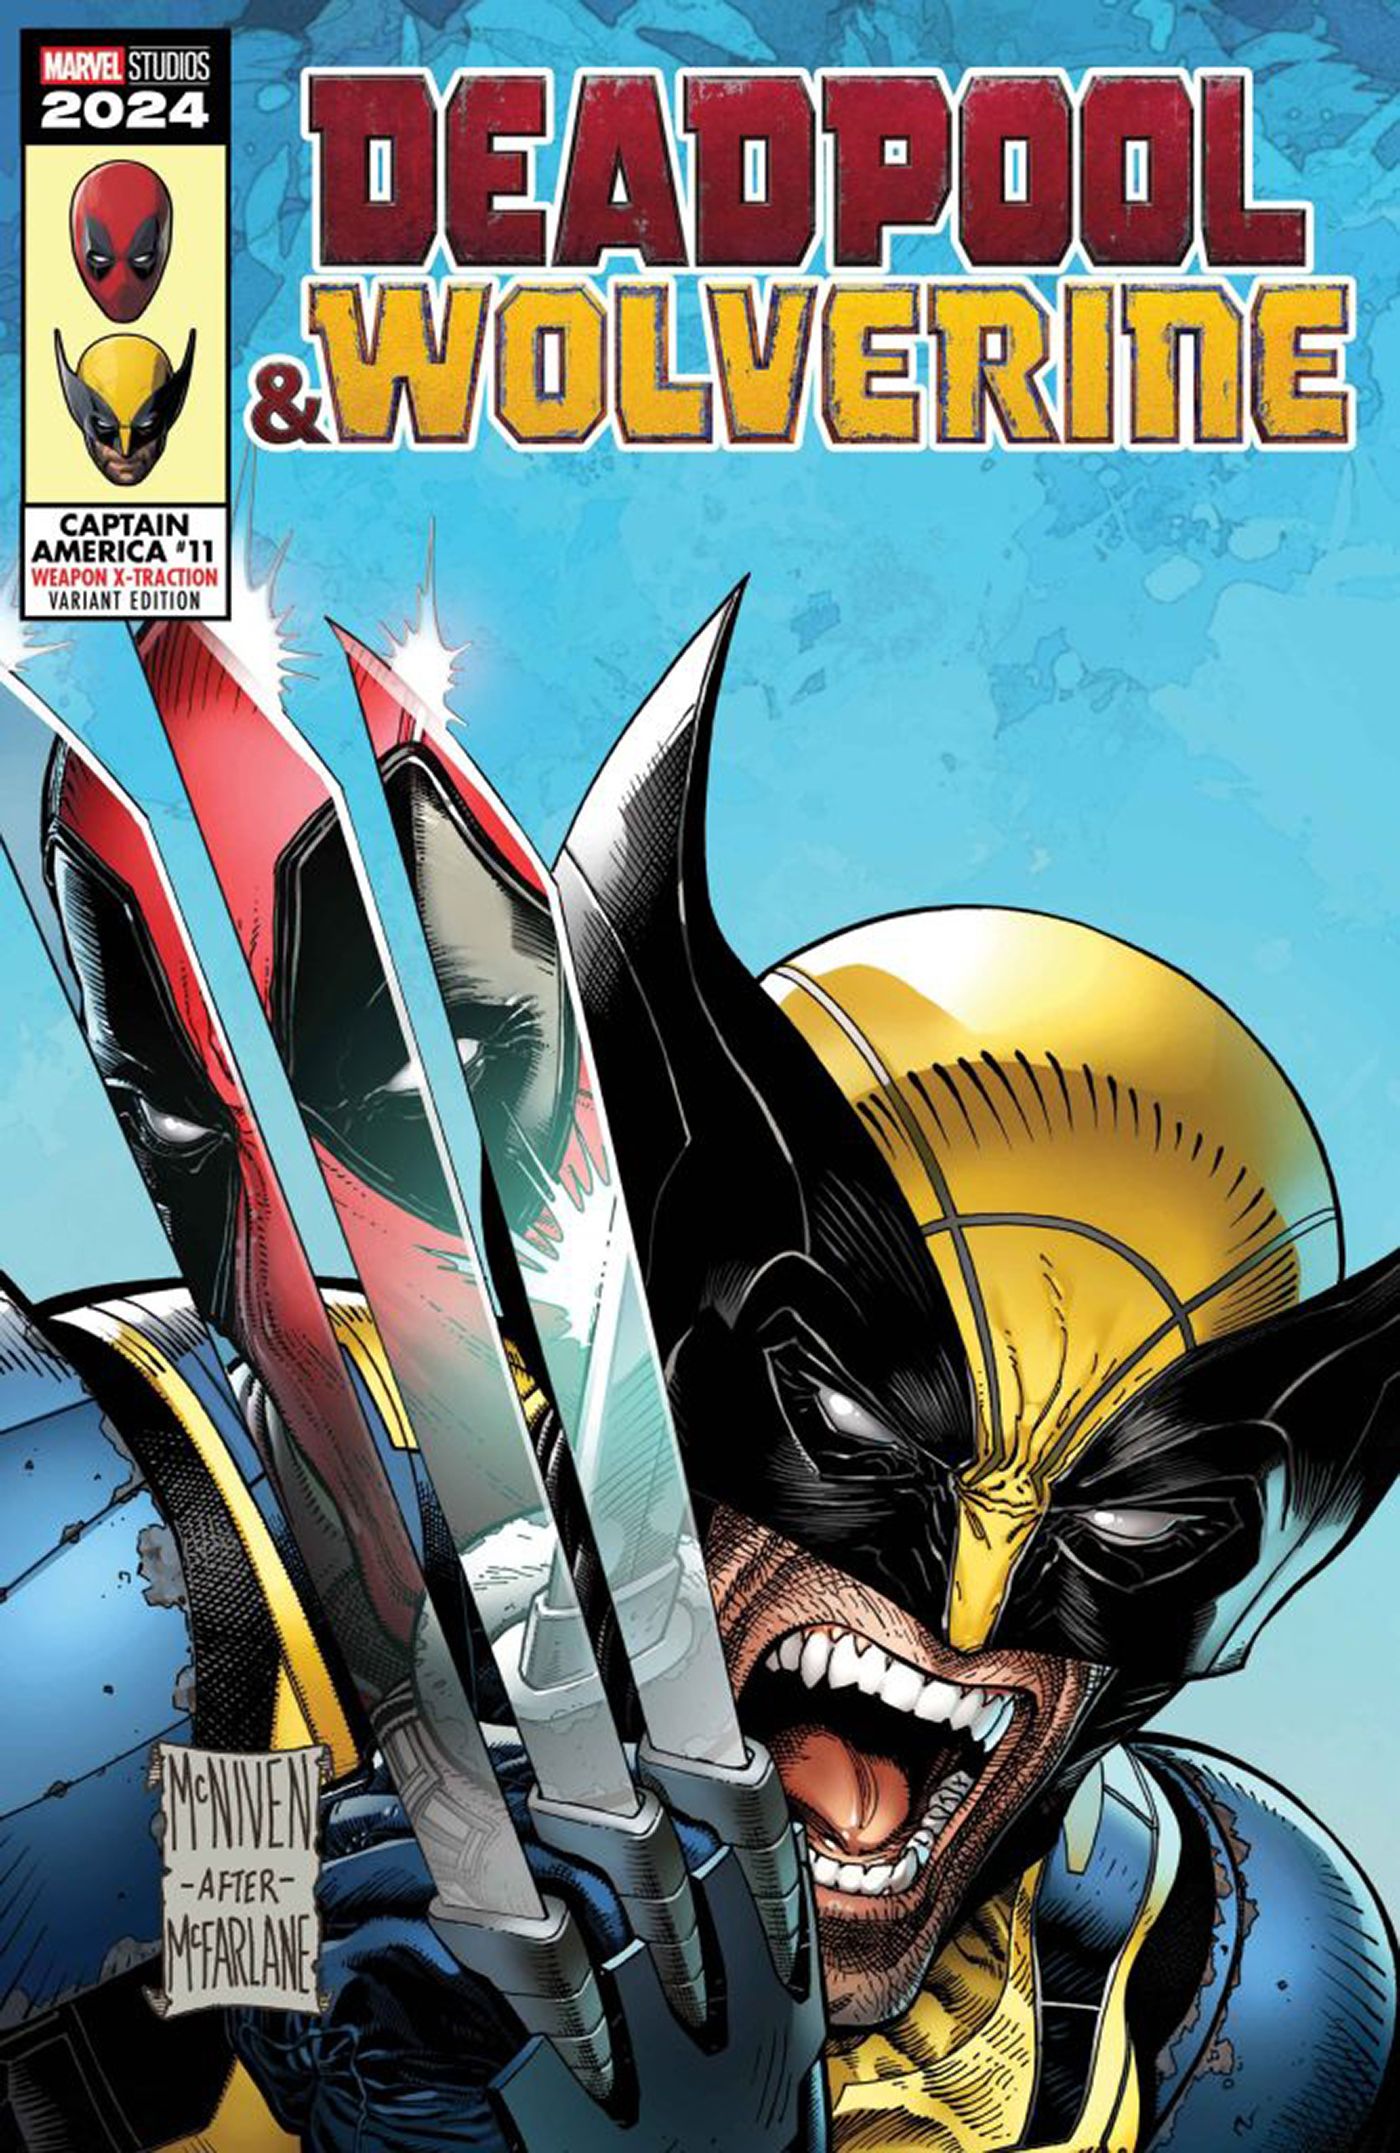 Capa variante para Deadpool e Wolverine. Wolverine rosna com suas garras expostas, e Deadpool é refletido nas garras.